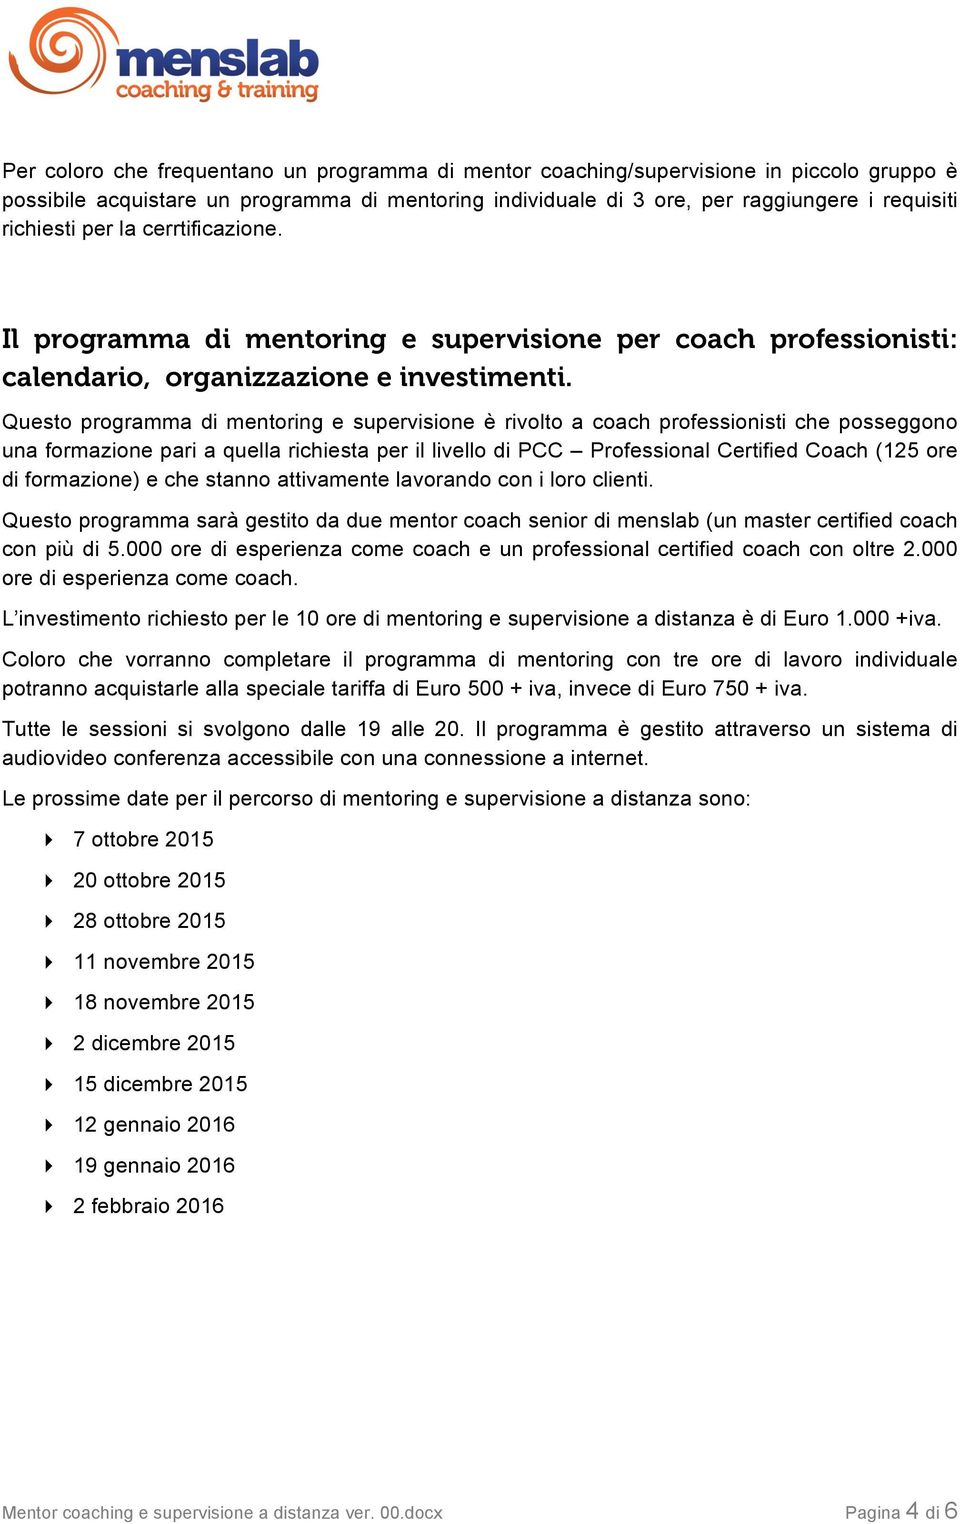 Questo programma di mentoring e supervisione è rivolto a coach professionisti che posseggono una formazione pari a quella richiesta per il livello di PCC Professional Certified Coach (125 ore di